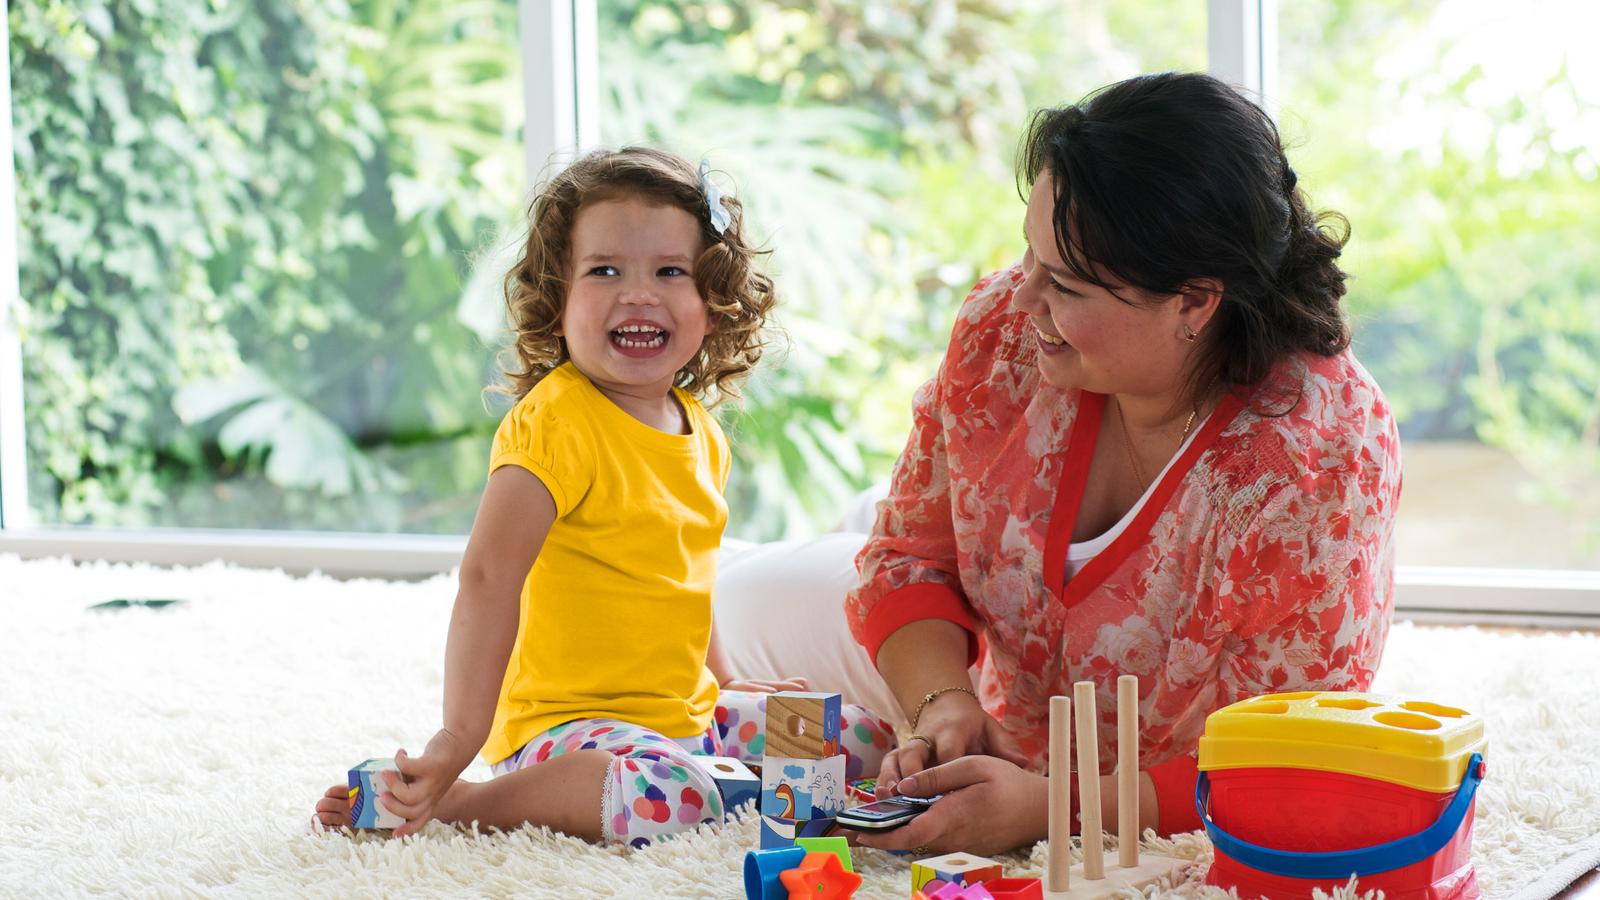 Ett litet barn leker på mattan medan en kvinna tittar på